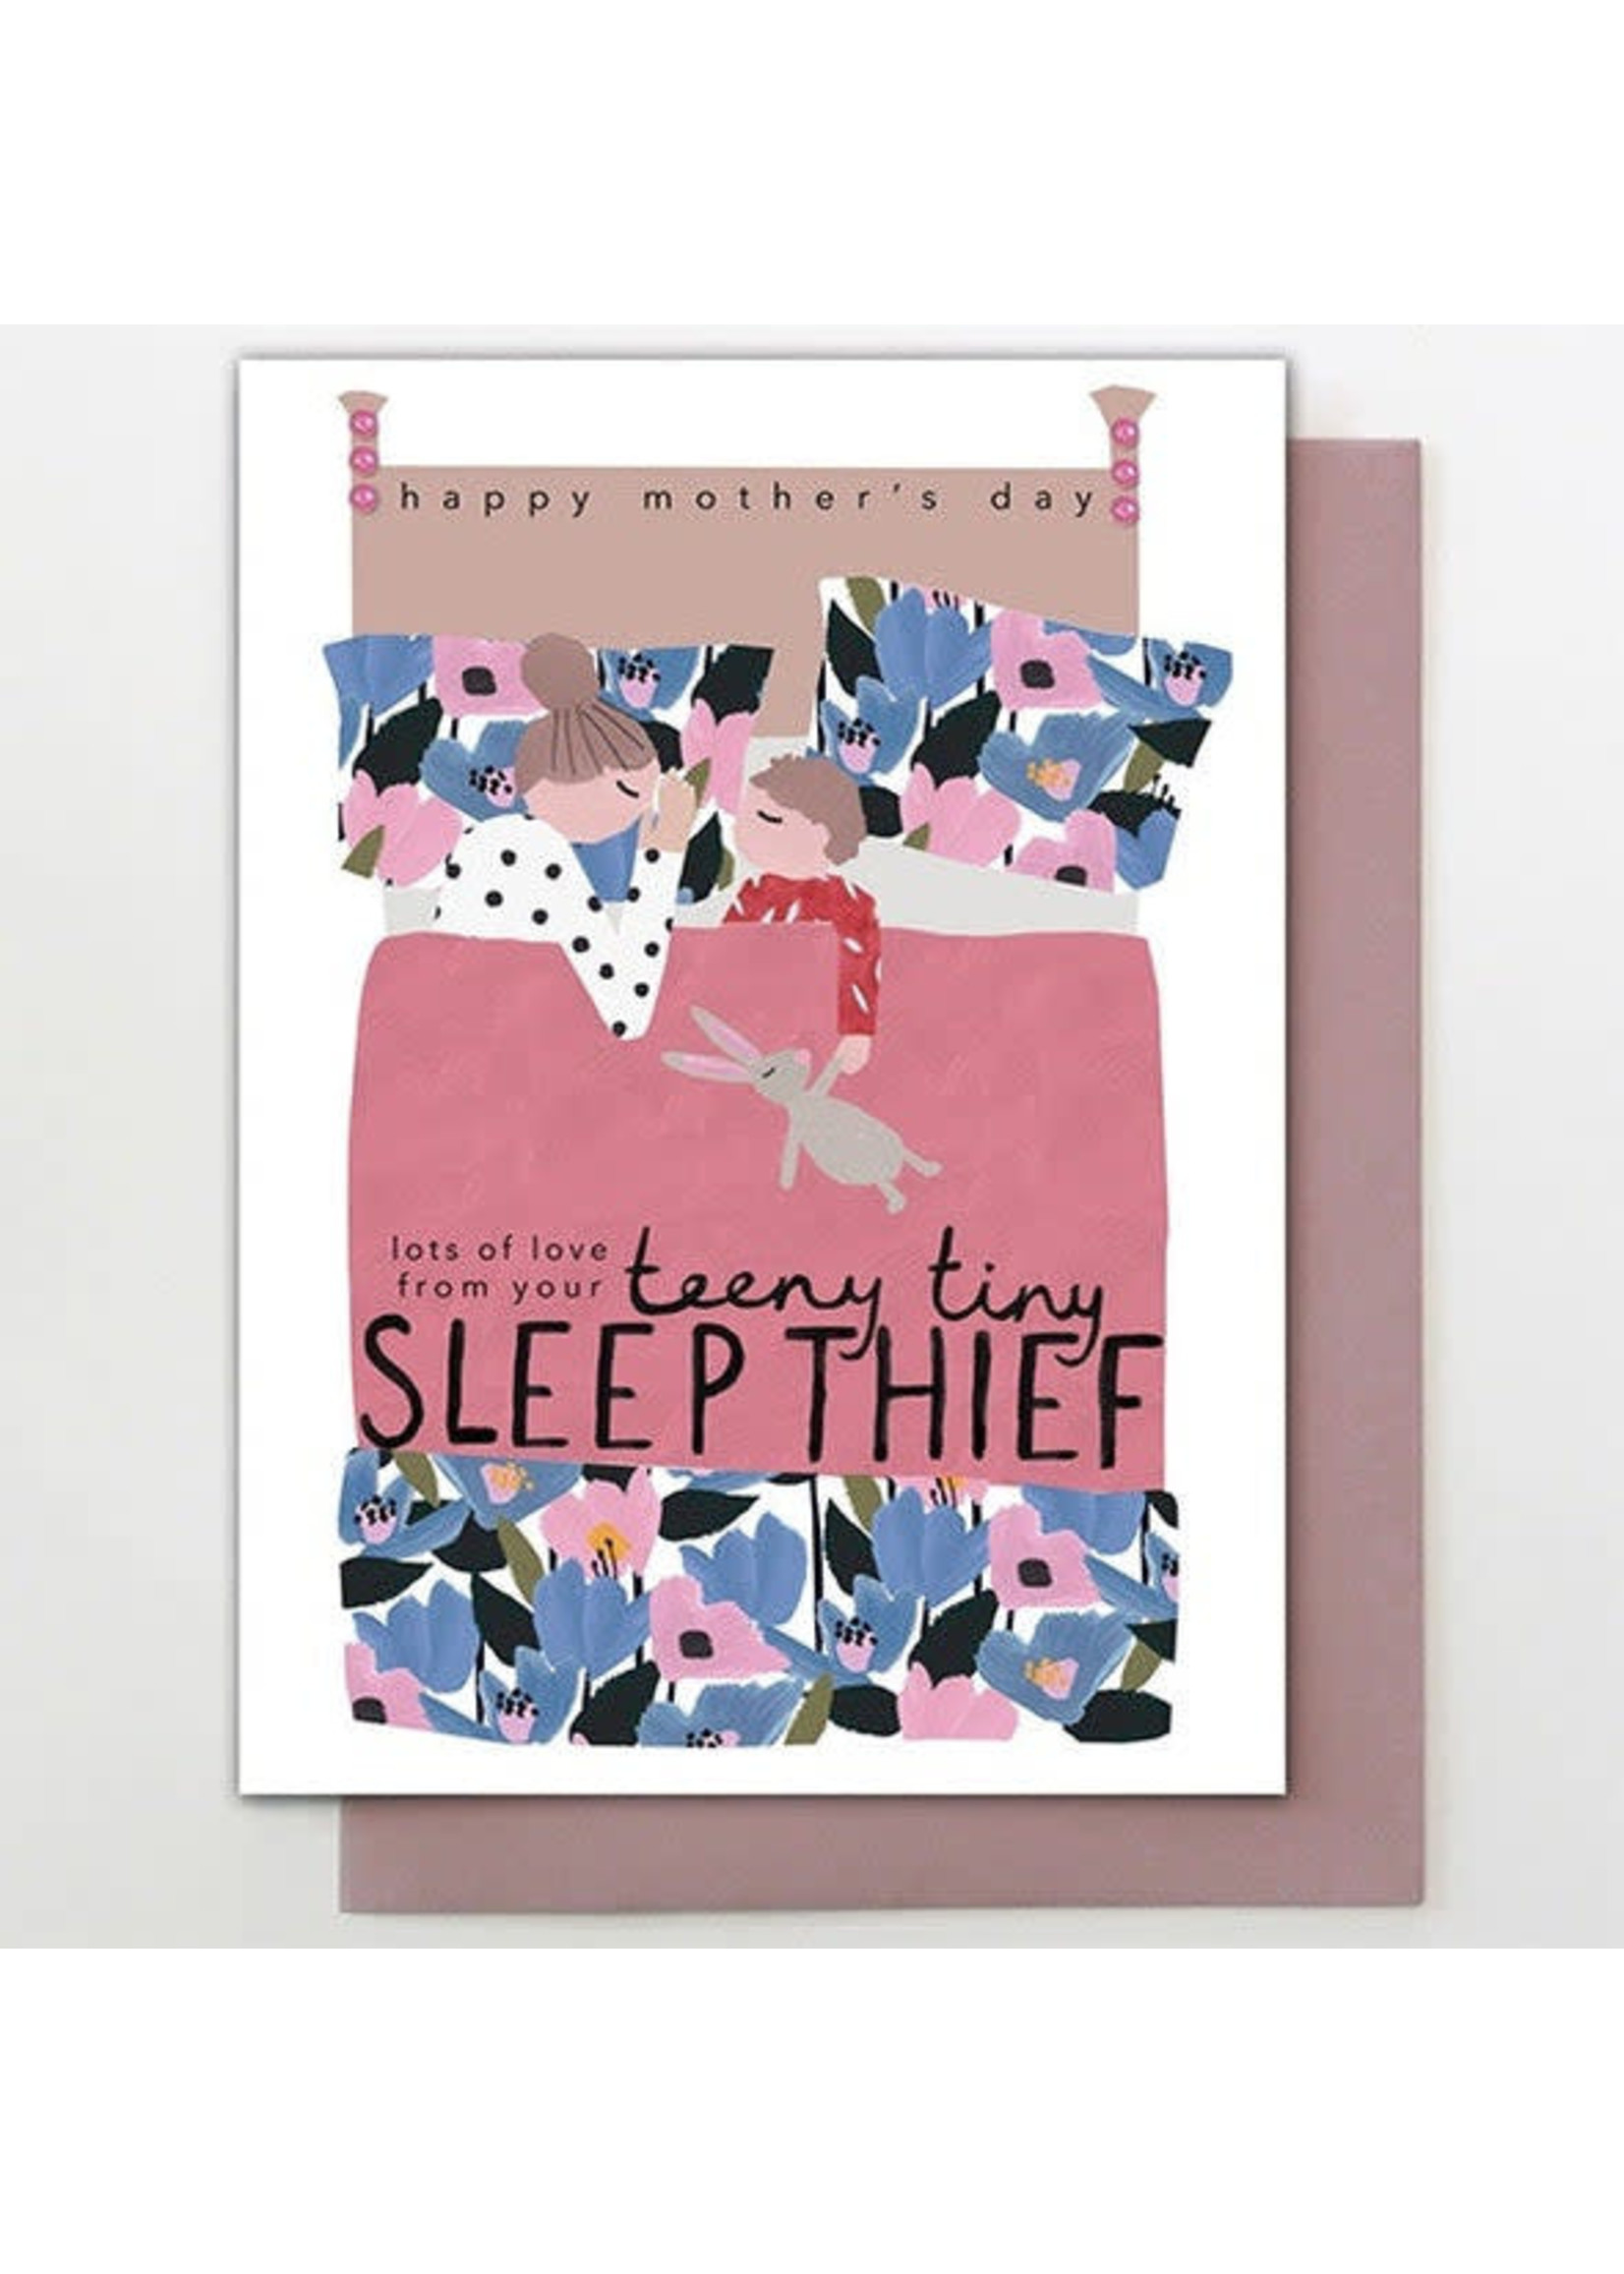 Stop the Clock Design From Teeny Tiny Sleep Thief